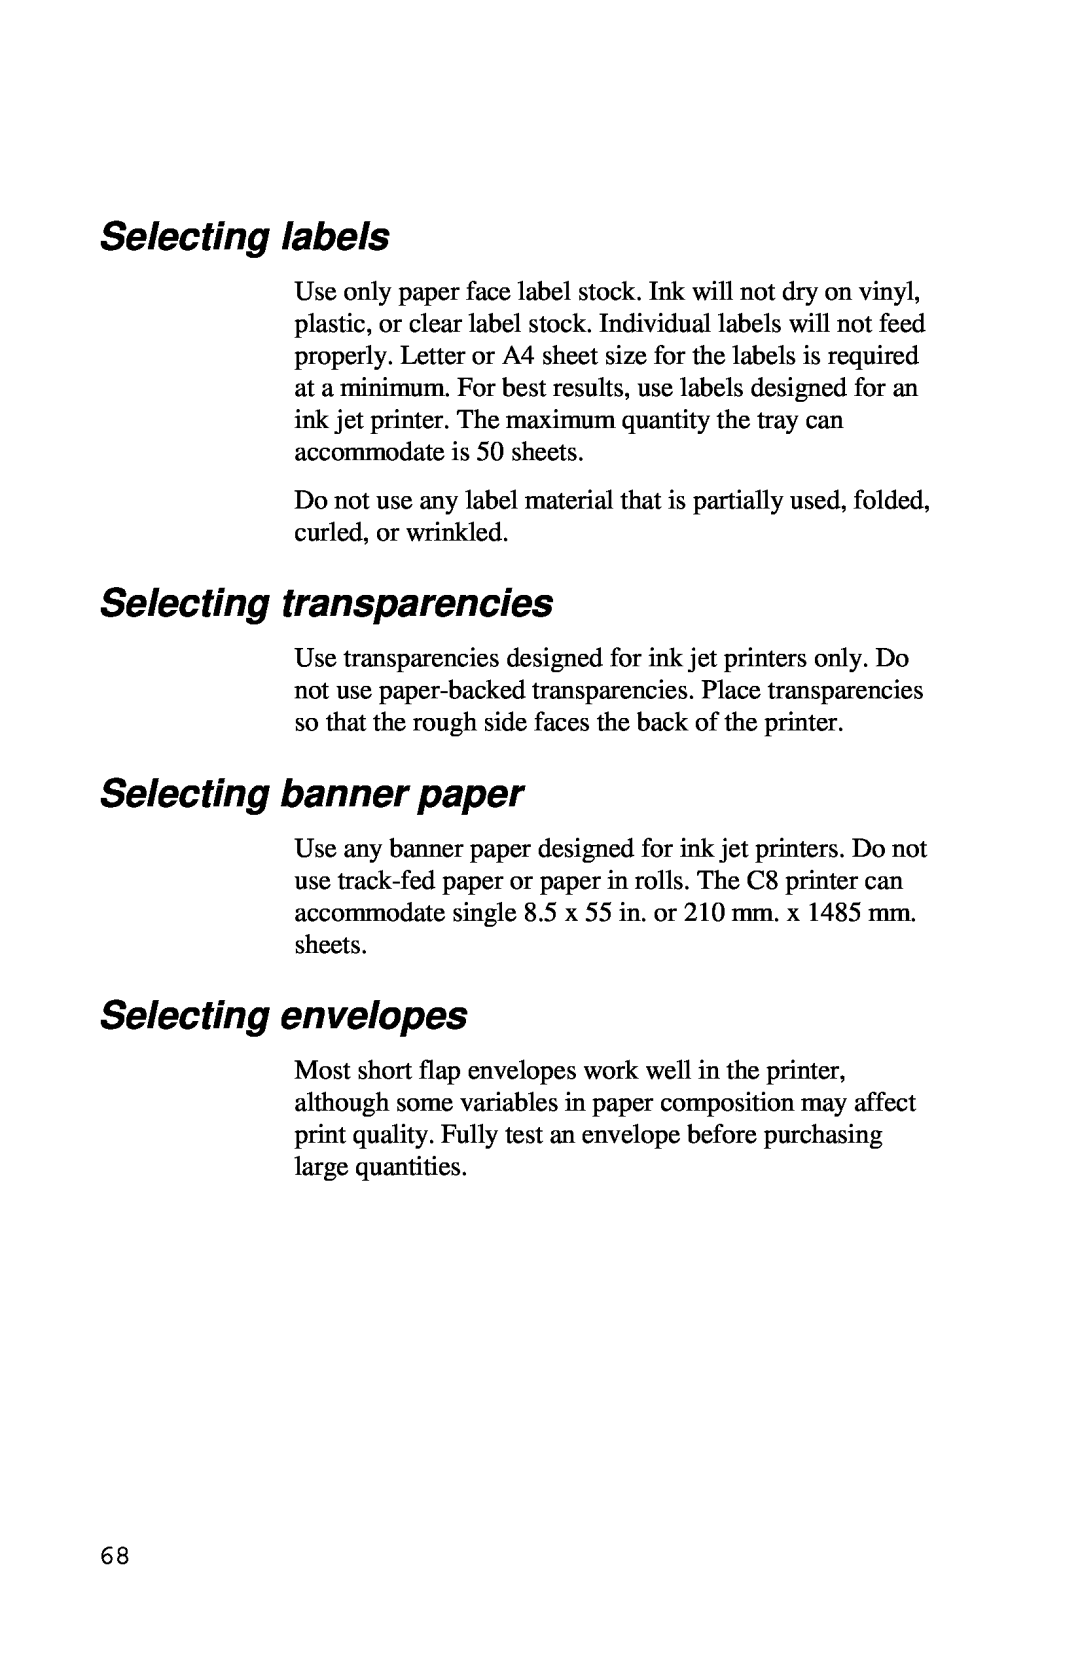 Xerox Inkjet Printer manual Selecting labels, Selecting transparencies, Selecting banner paper, Selecting envelopes 